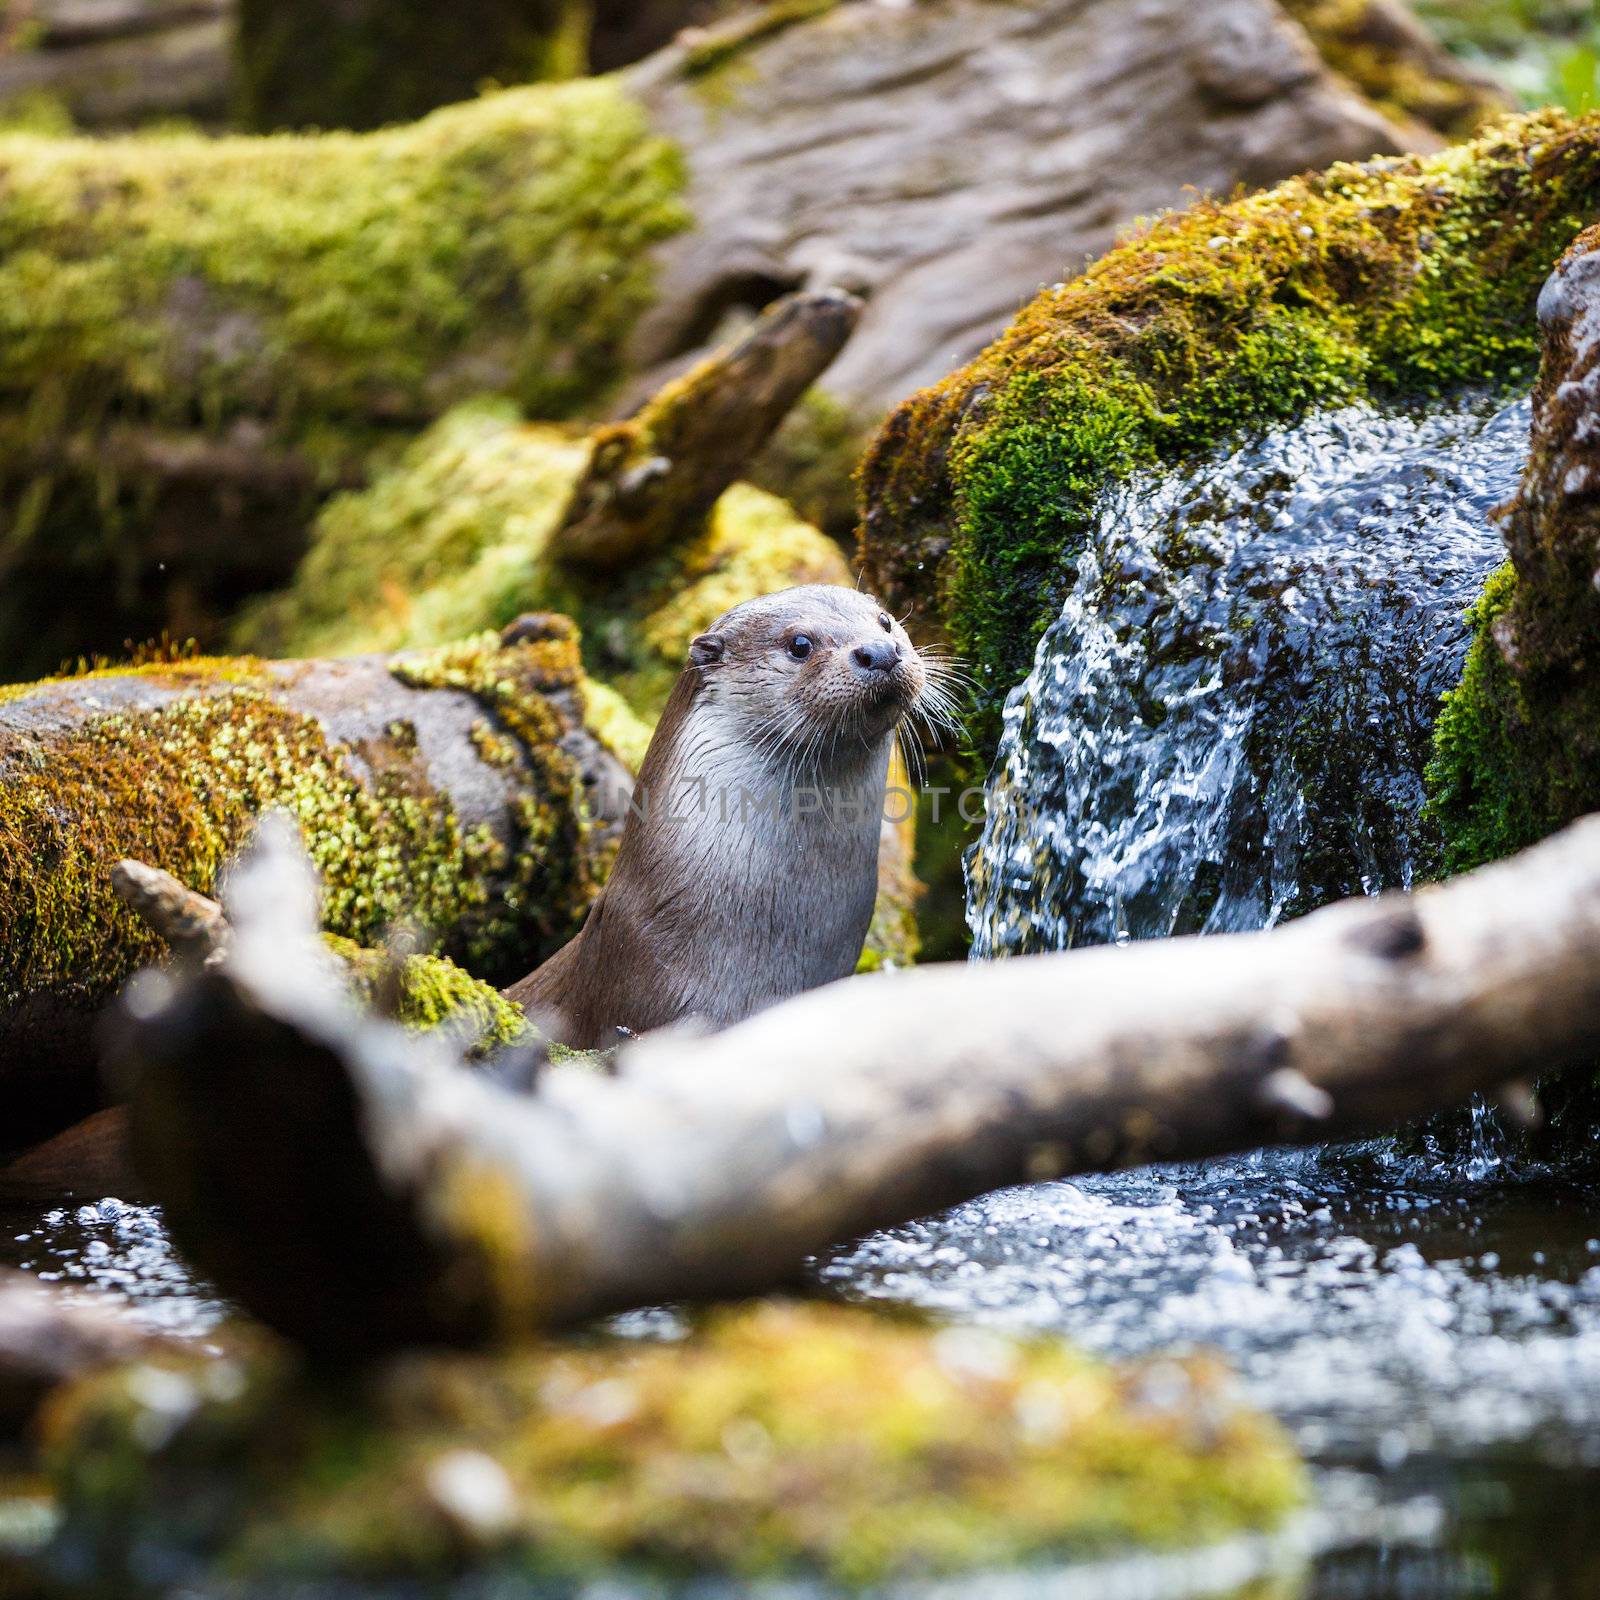 Eurasian otter (Lutra lutra) by viktor_cap